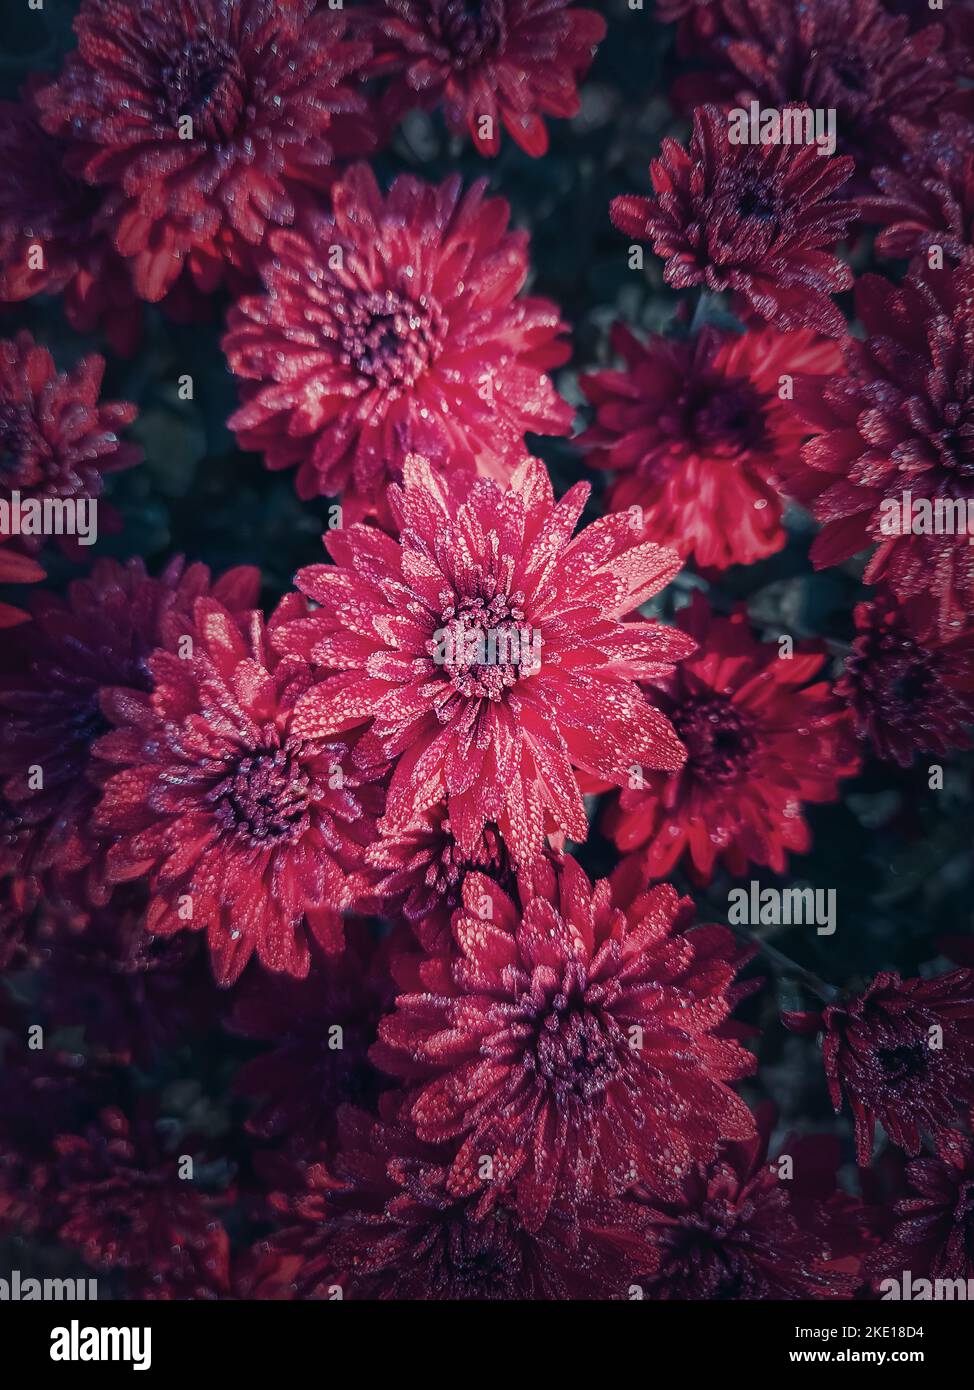 Draufsicht rote Chrysantheme Textur. Wunderschöne Blumen im Garten mit morgendlichen Tau-Tropfen auf den Blütenblättern. Kastanienbraune Blumenmuster Stockfoto